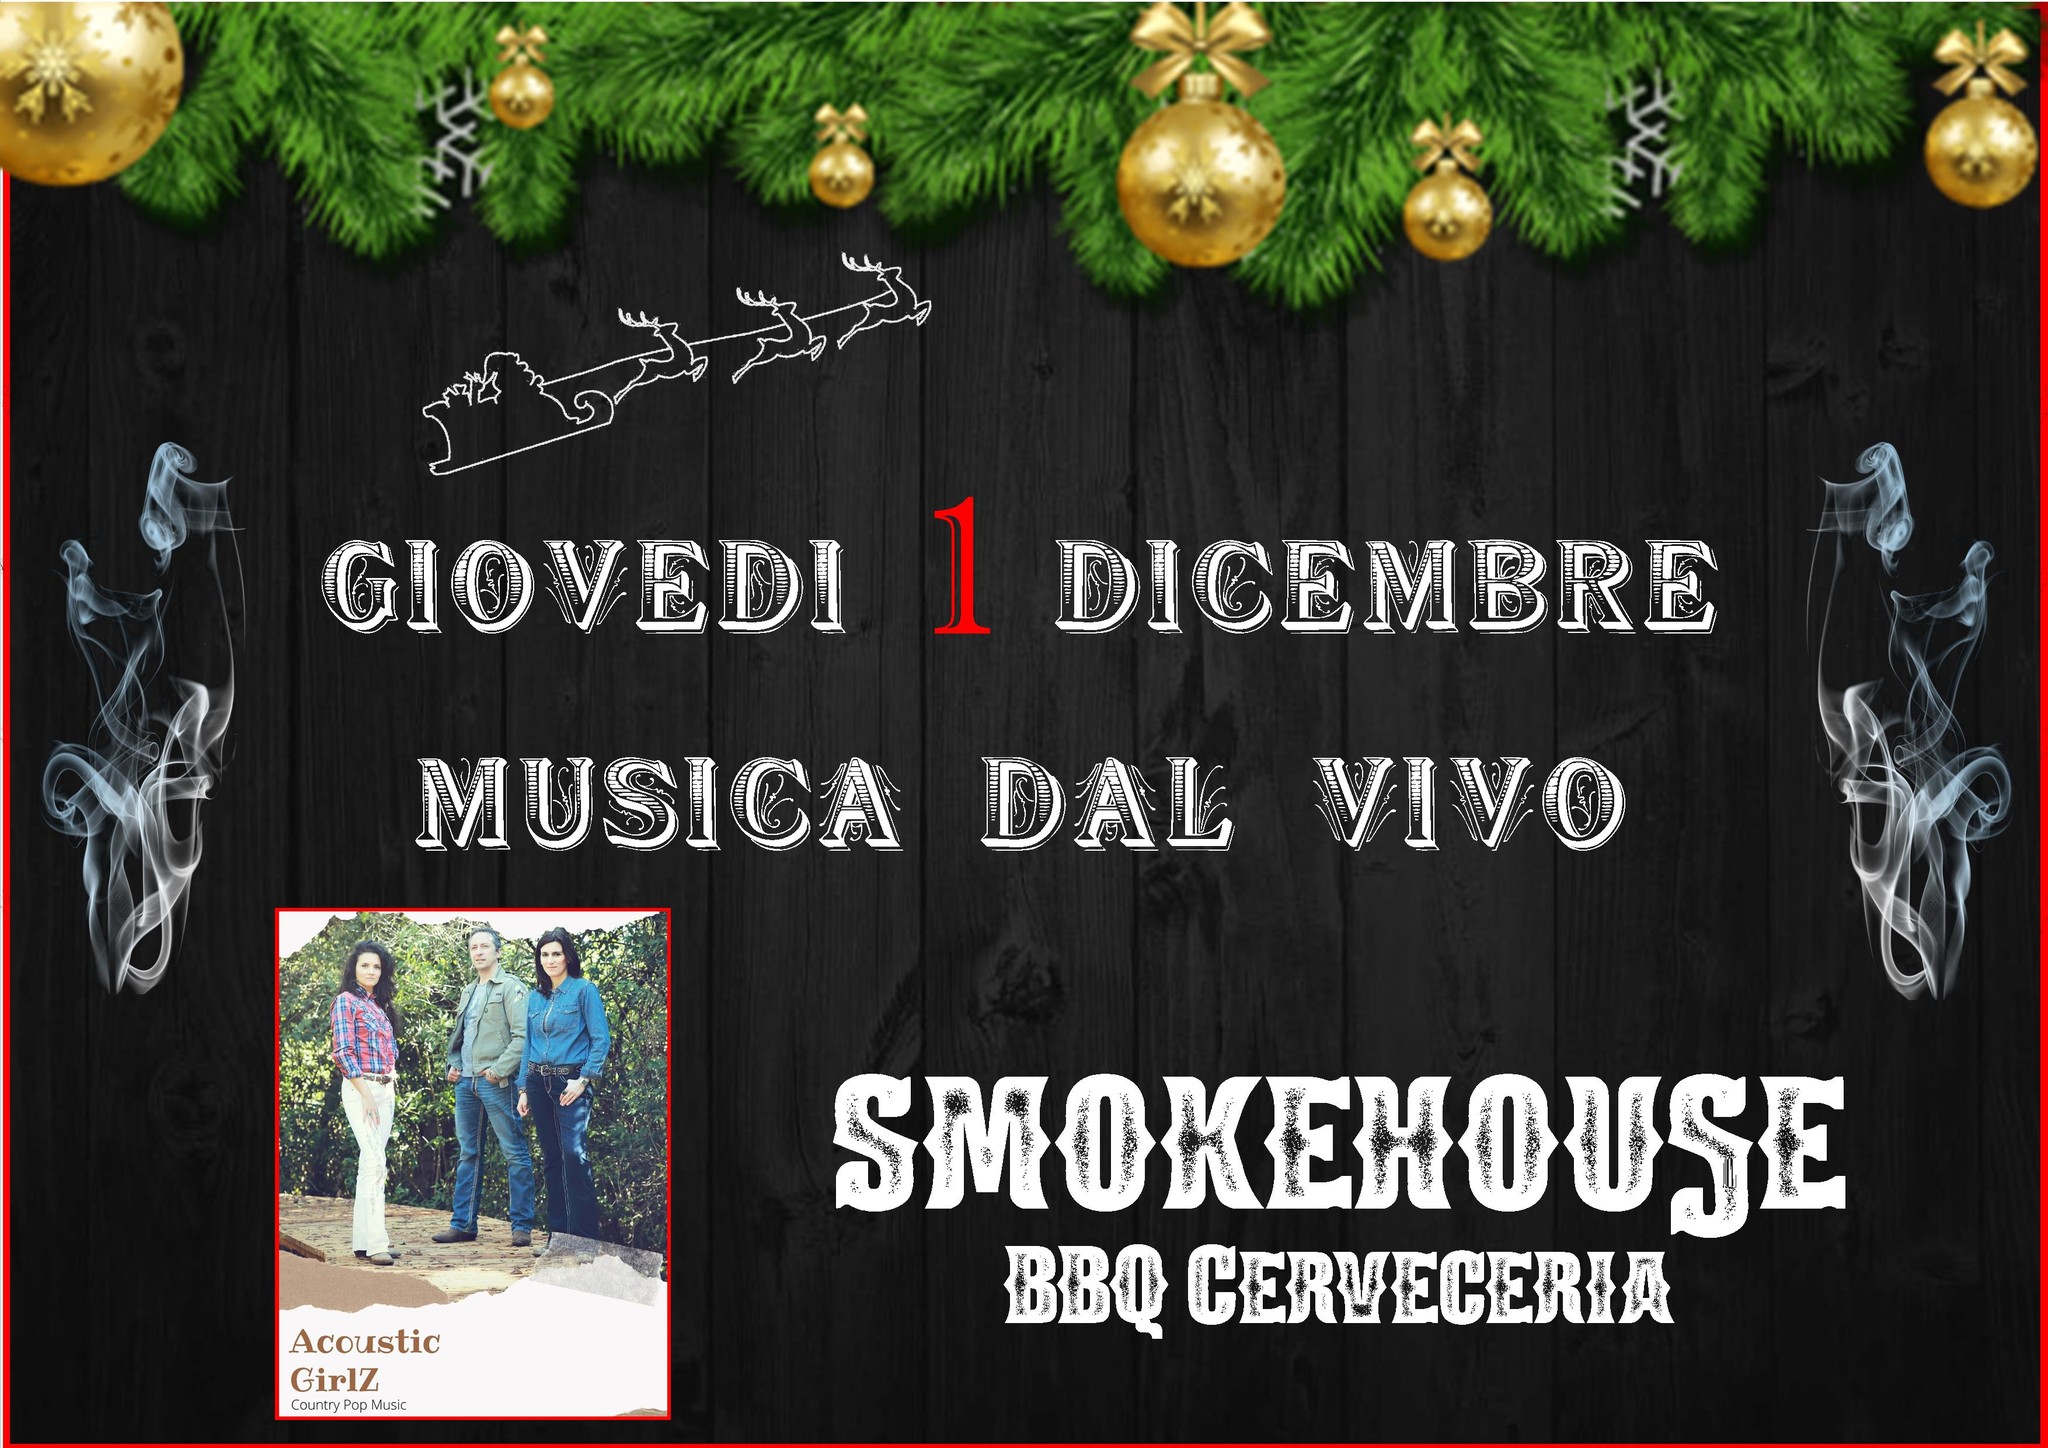 MUSICA DAL VIVO in SmokeHouse BBQ Cerveceria - ACOUSTIC GIRLZ